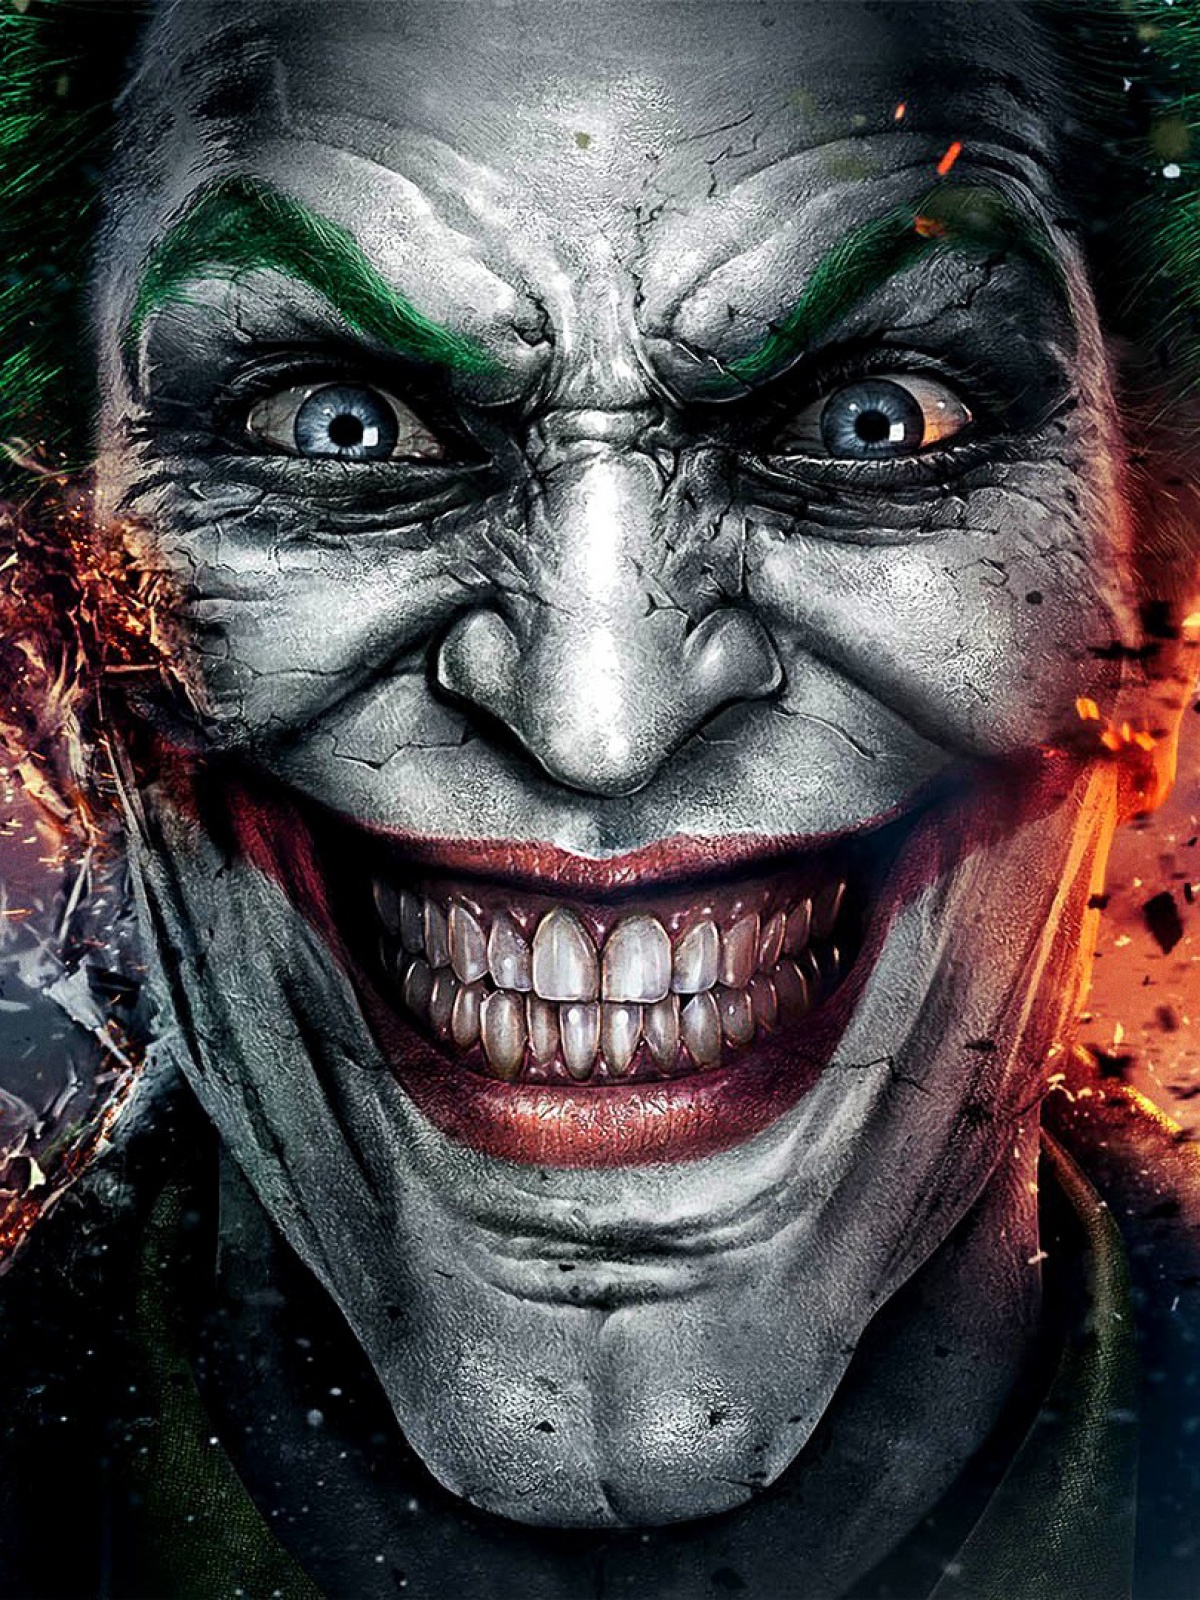 The Joker Batman Smile Android Wallpaper